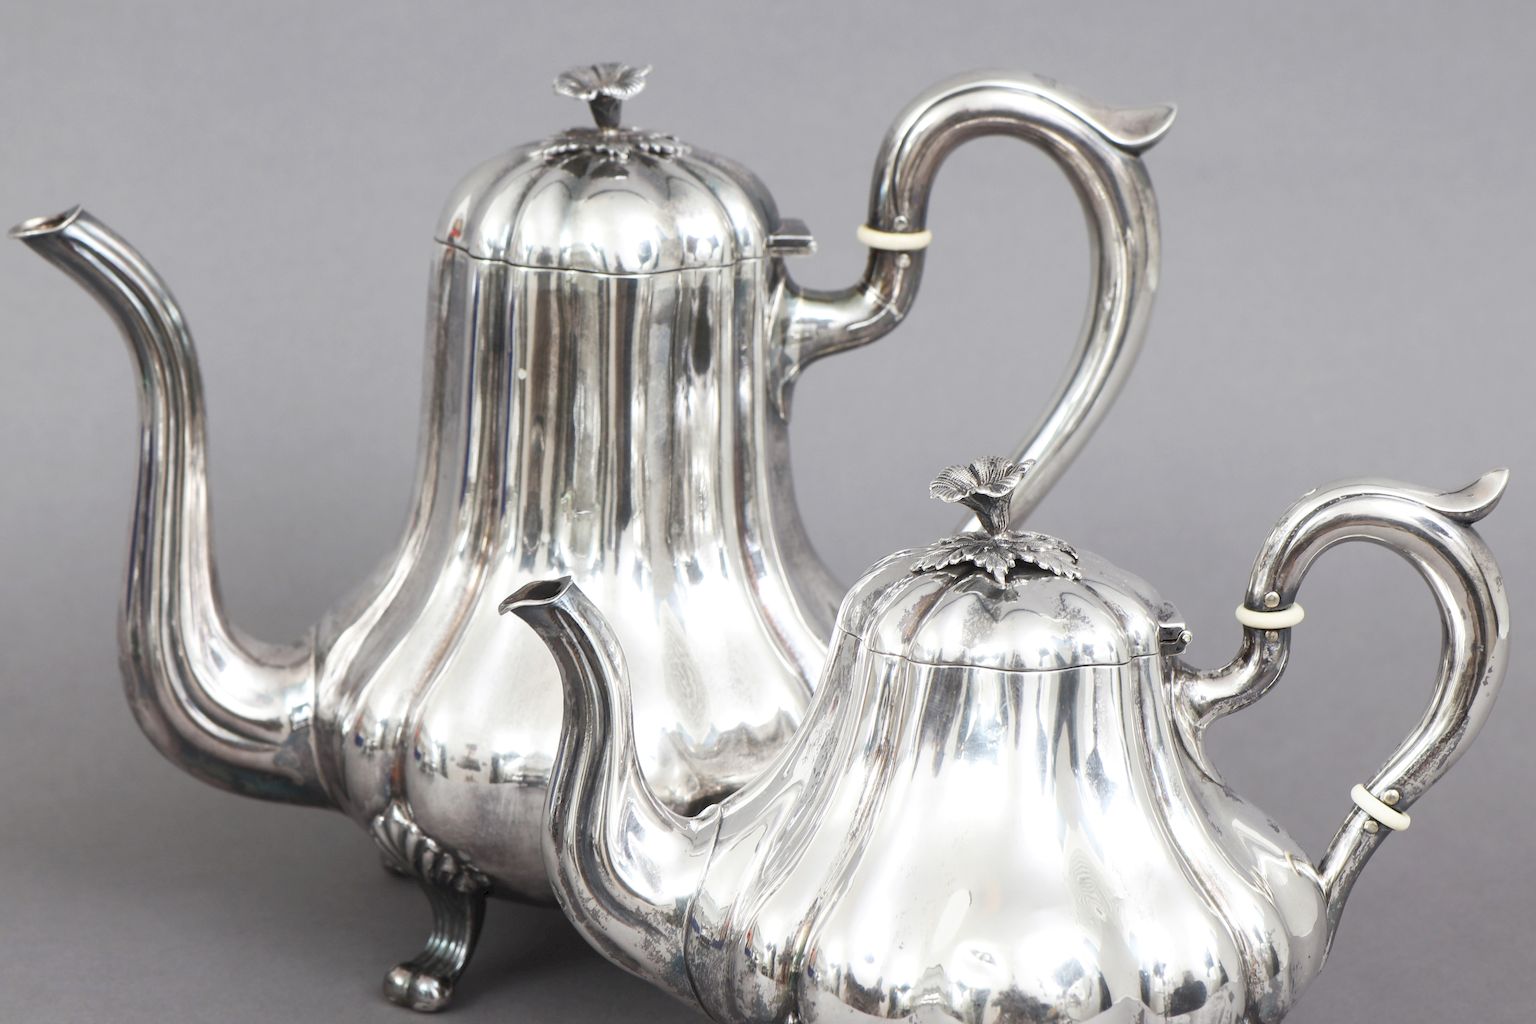 Silber Tee- und Kaffeeservice19. Jahrhundert, 925er Silber, 4-teiliges Set bestehend aus Teekanne, - Image 4 of 5